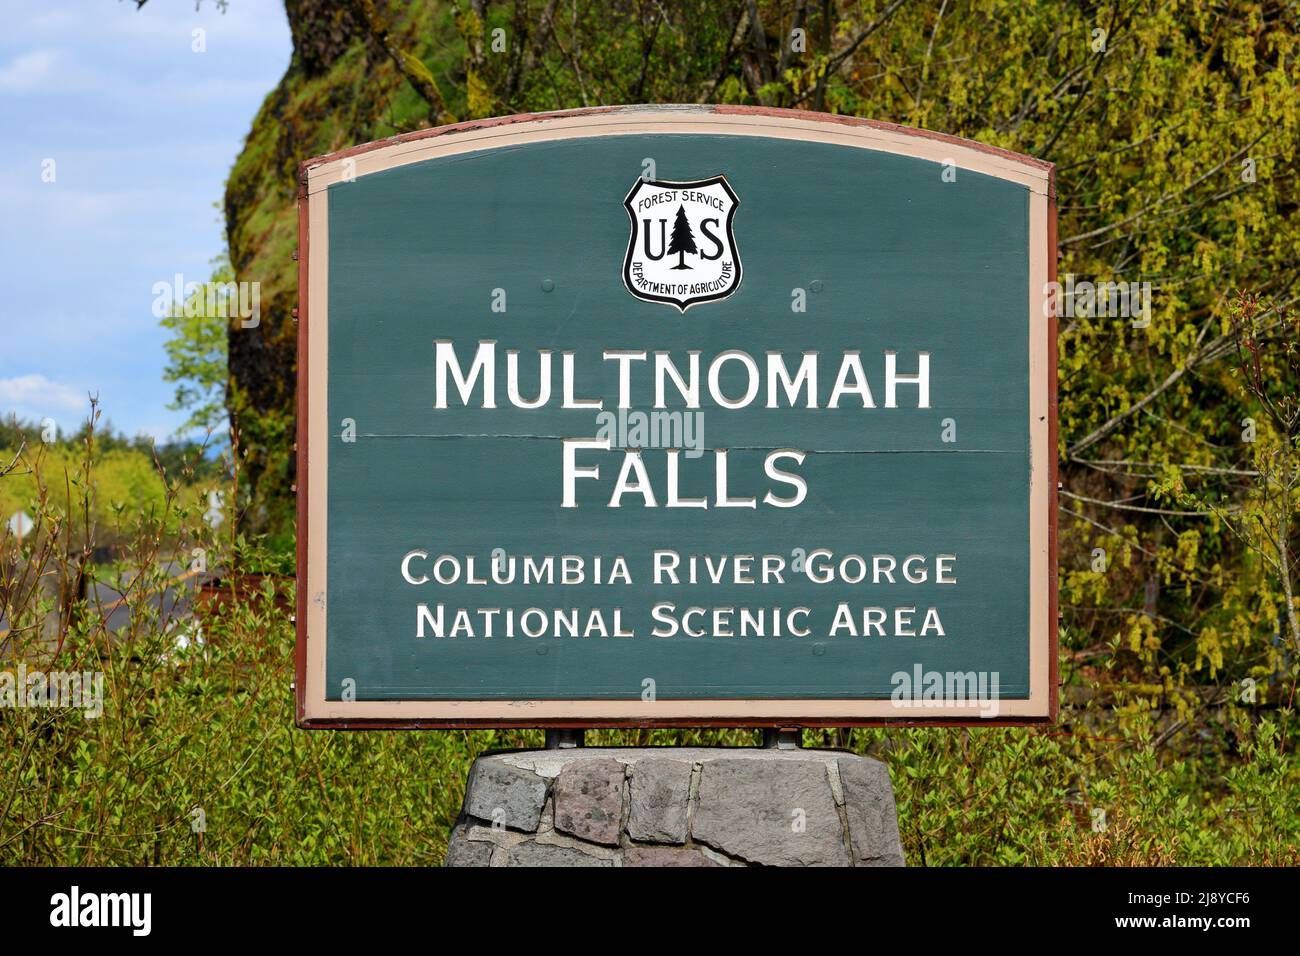 La signalisation pour le US Forest Service a géré les chutes Multnomah dans la zone panoramique nationale de Columbia River gorge, Oregon. Banque D'Images